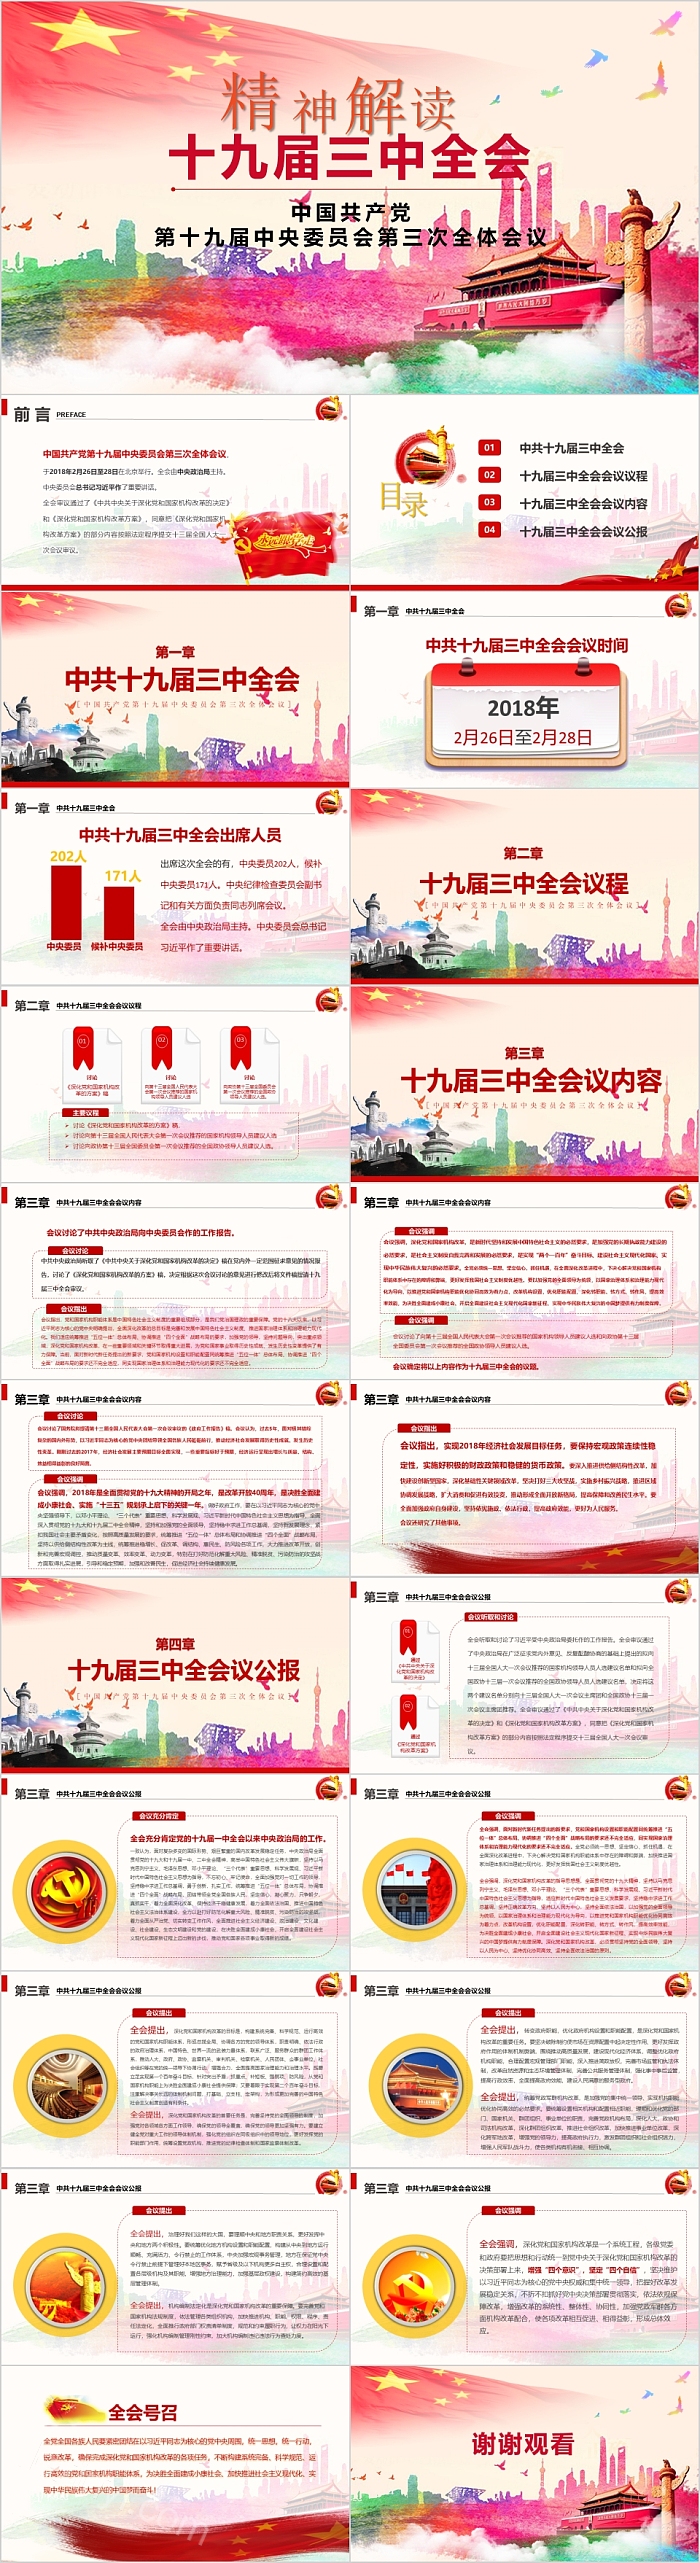 中国共产党 第十九届中央委员会第三次全体会议